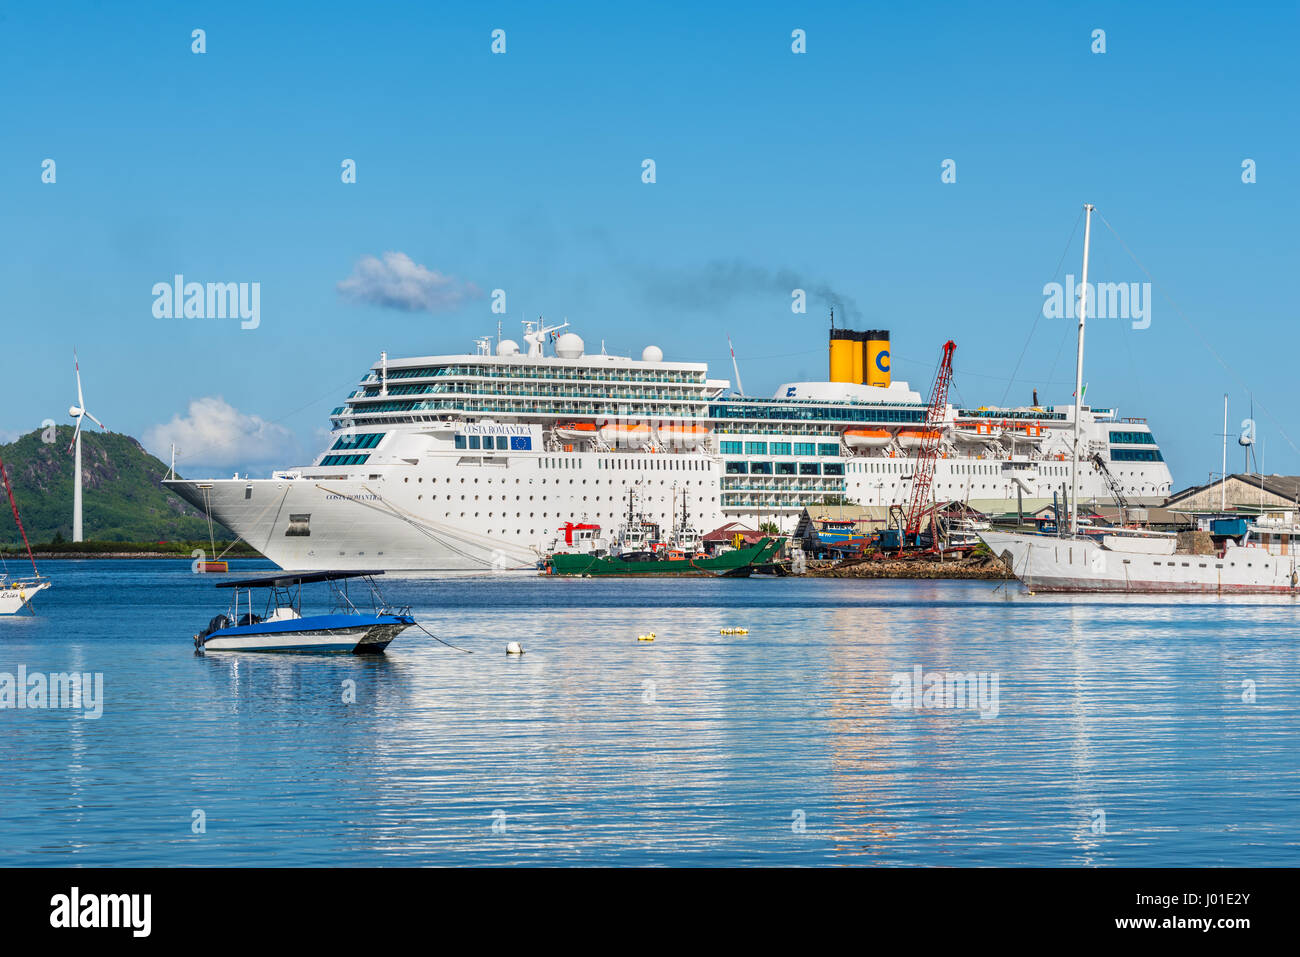 Victoria, île de Mahé, Seychelles - 16 décembre 2015 : Costa Neoromantica Cruise ship ancré au port de Victoria, île de Mahé, Seychelles, océan Indien Banque D'Images